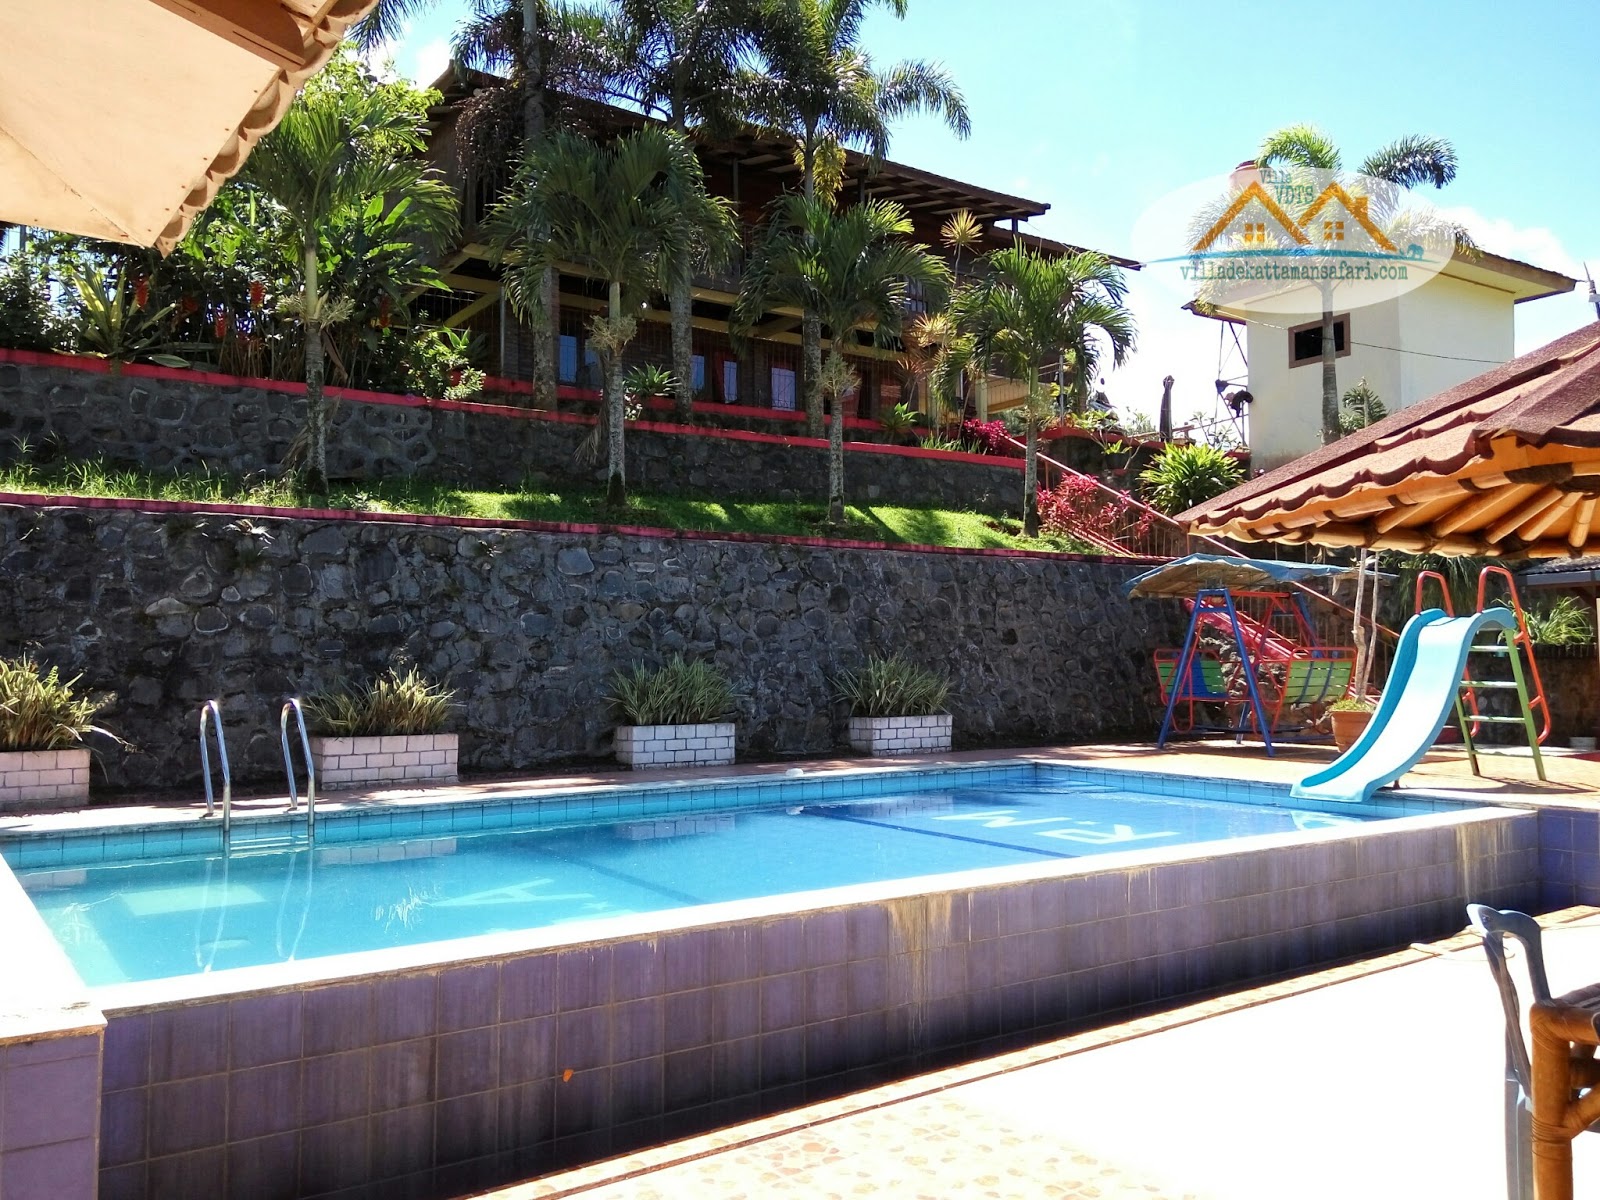  Villa  Puncak Dekat Taman  Safari Bogor Hotel di puncak 